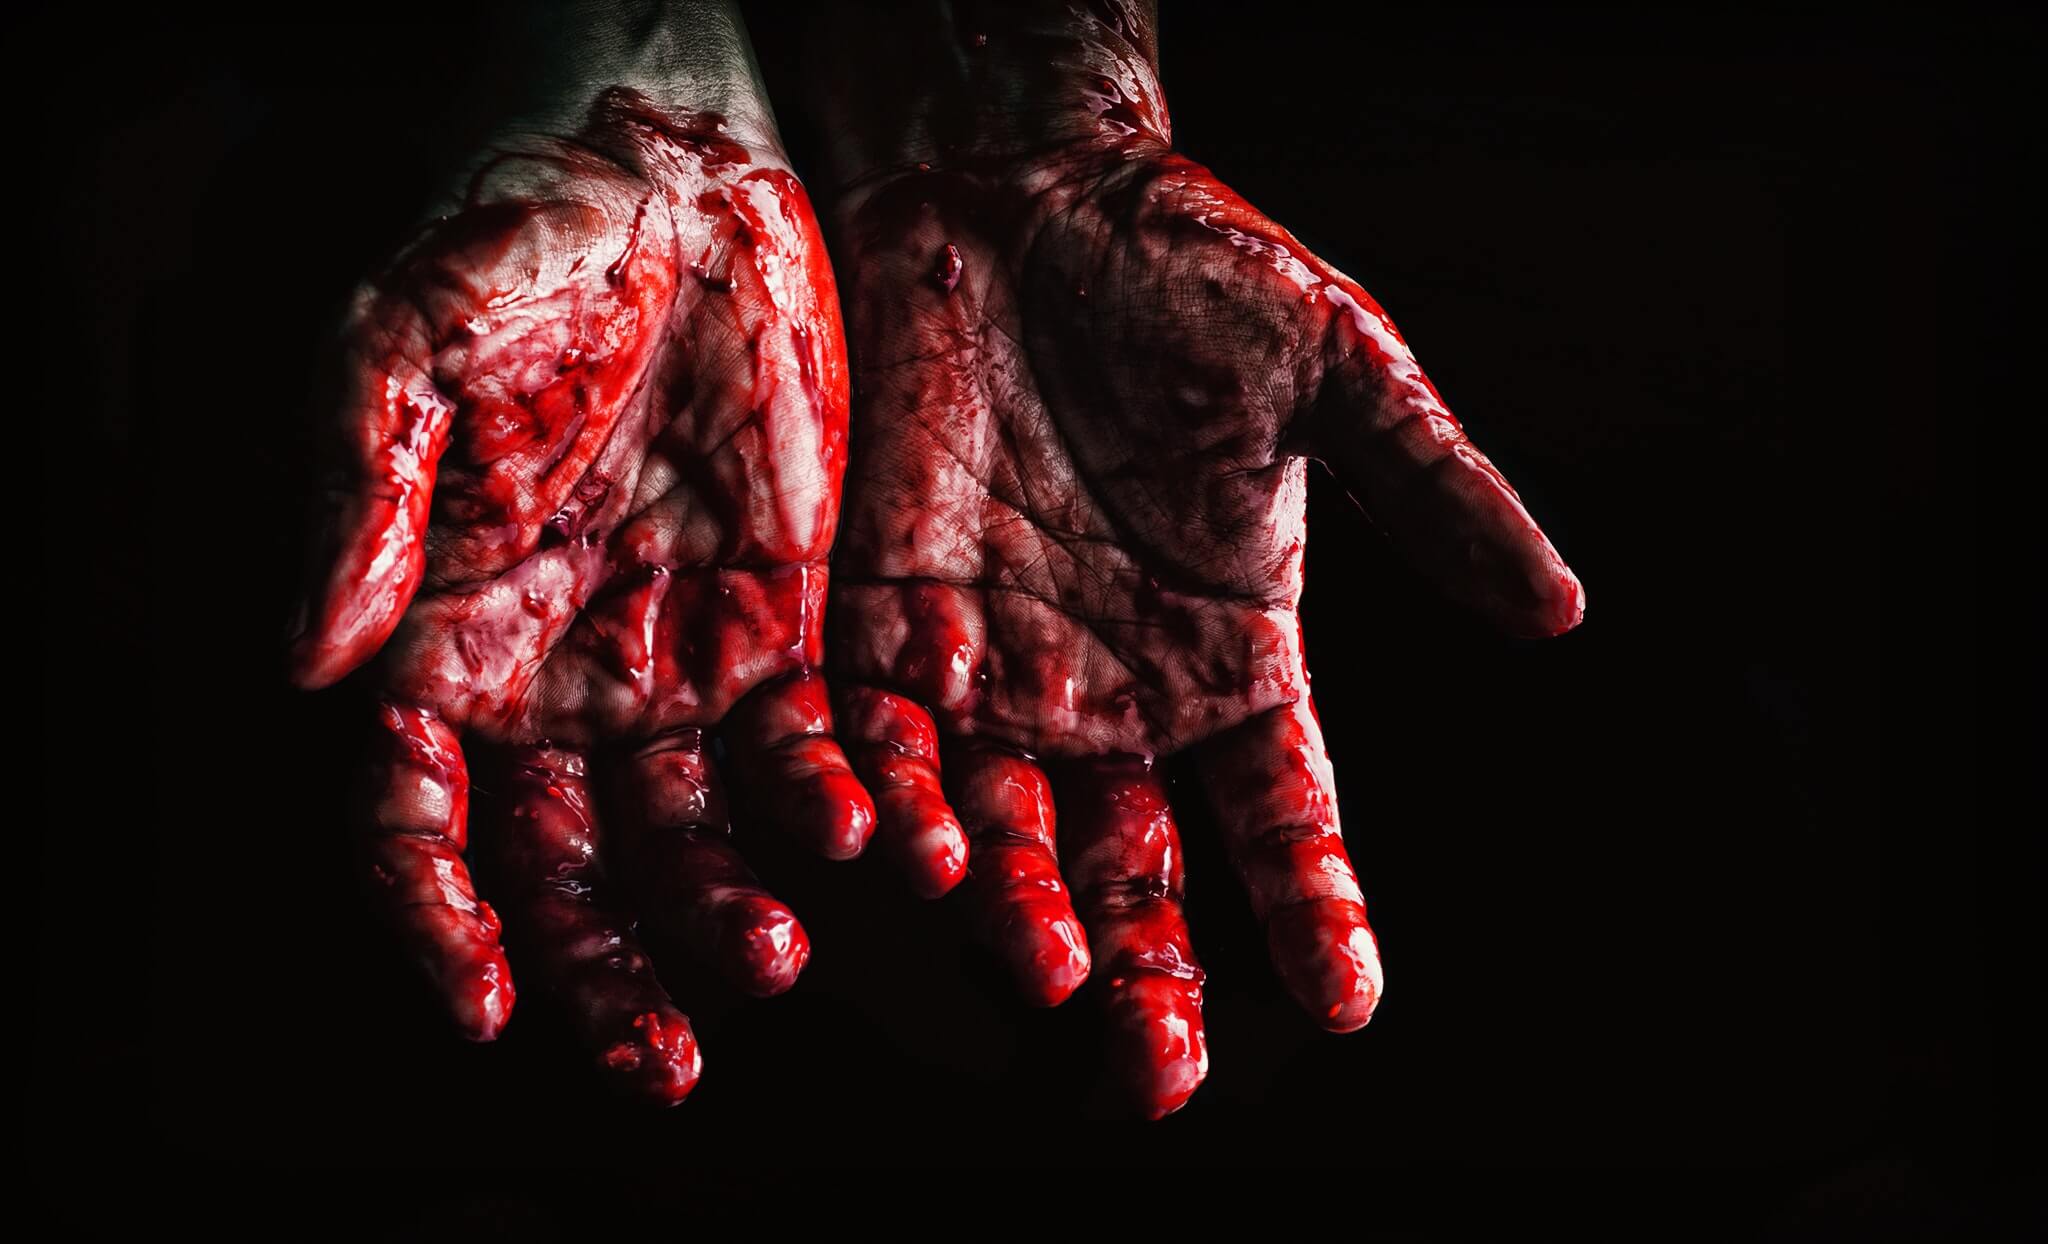 twee handen die doordrenkt zijn in bloed, zogenaamd van een seriemoordenaar nadat hij een moord heeft gepleegd